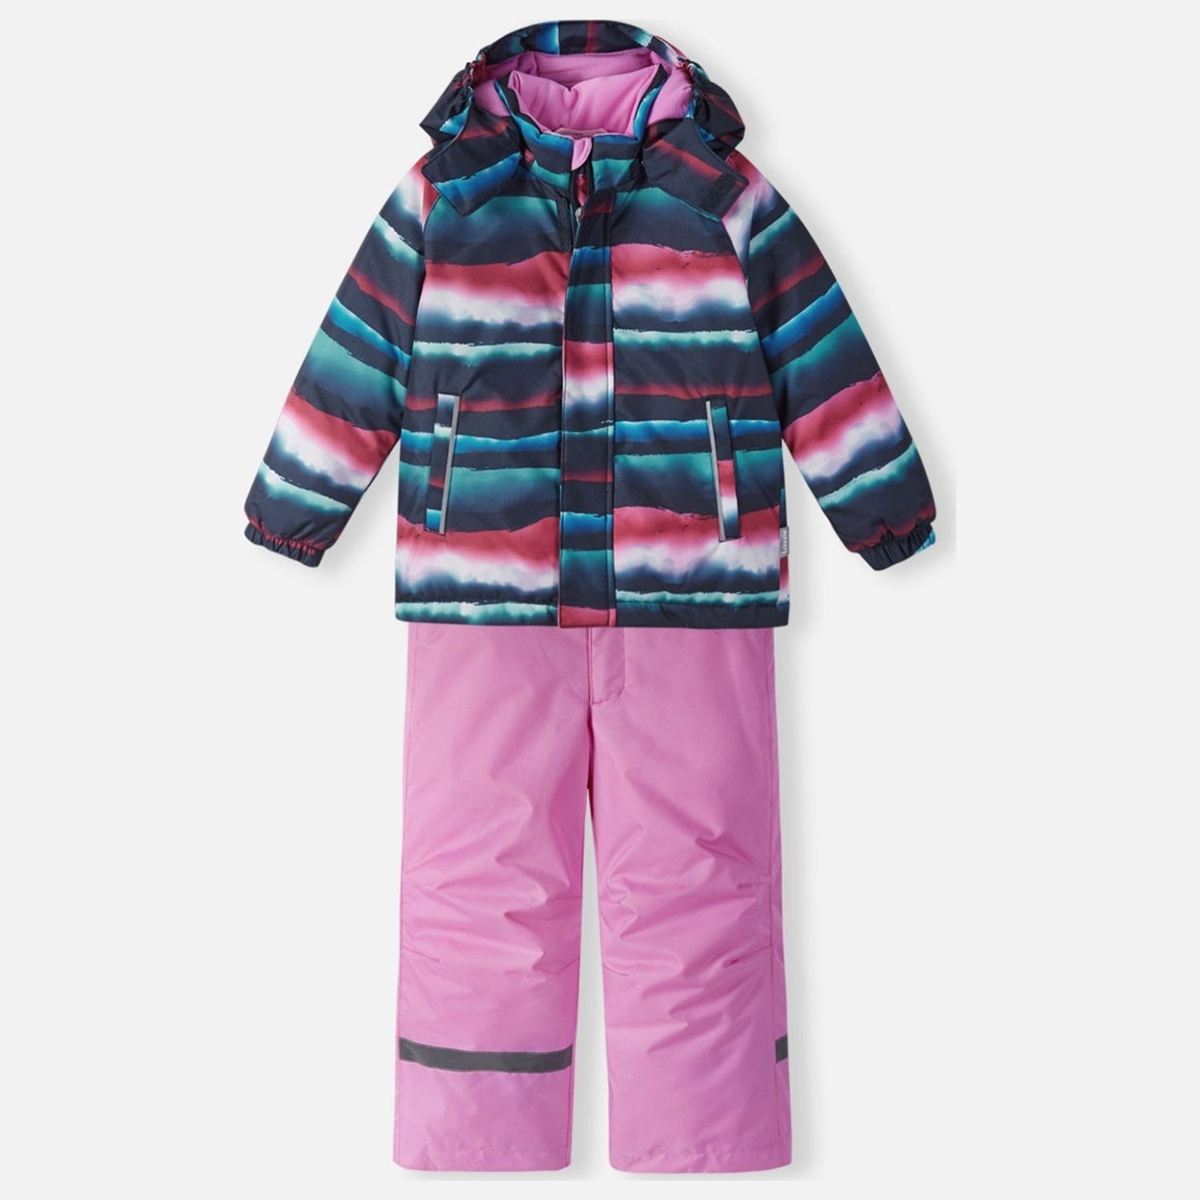 Комплект верхней одежды детский Lassie Raiku, 6962-темно-синий с розовым рисунком, 140